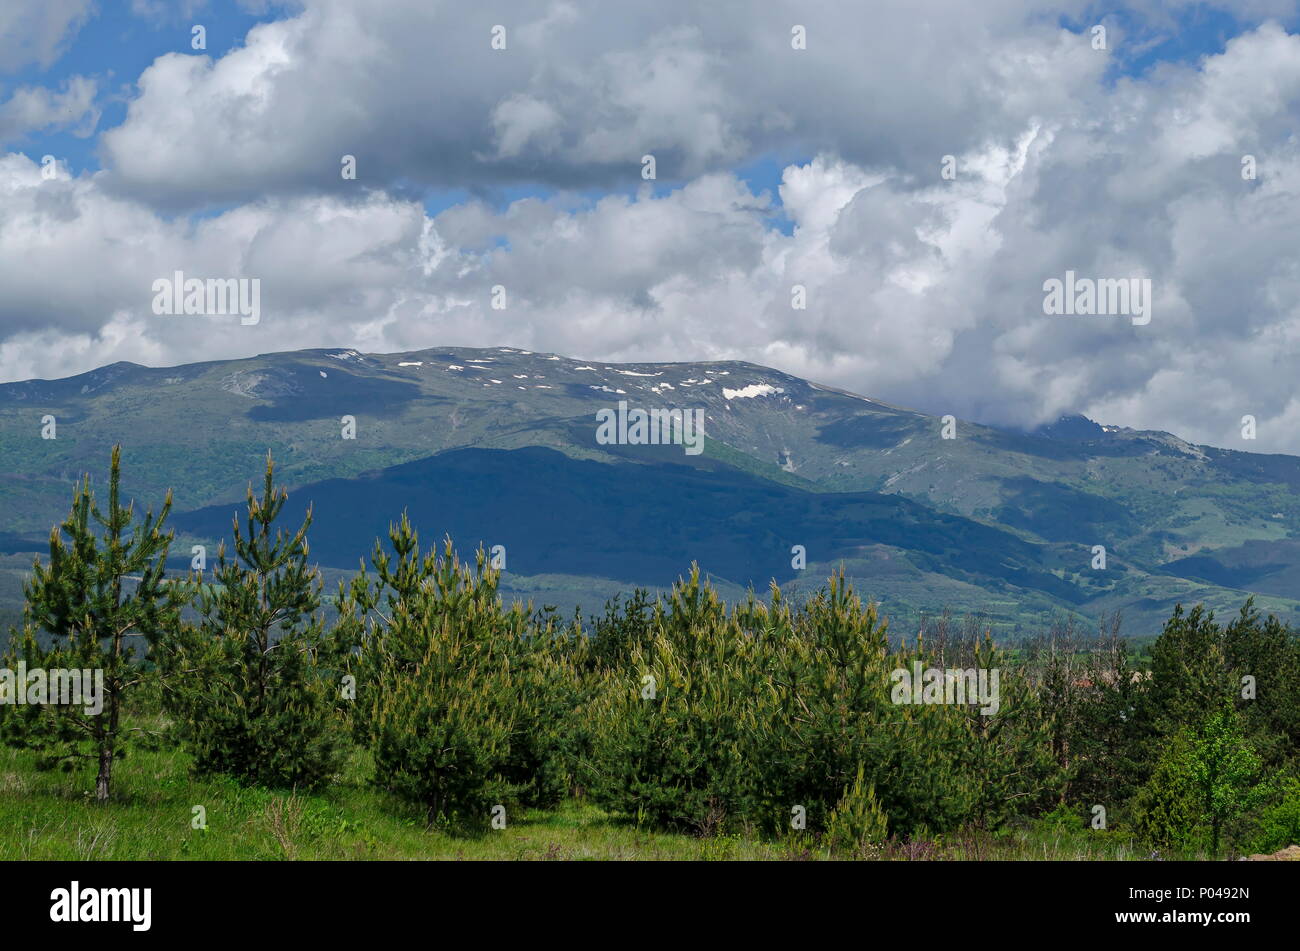 Scène de montagne printemps avec glade, forêt et le quartier résidentiel de Plana, village bulgare, la Bulgarie montagne Plana Banque D'Images